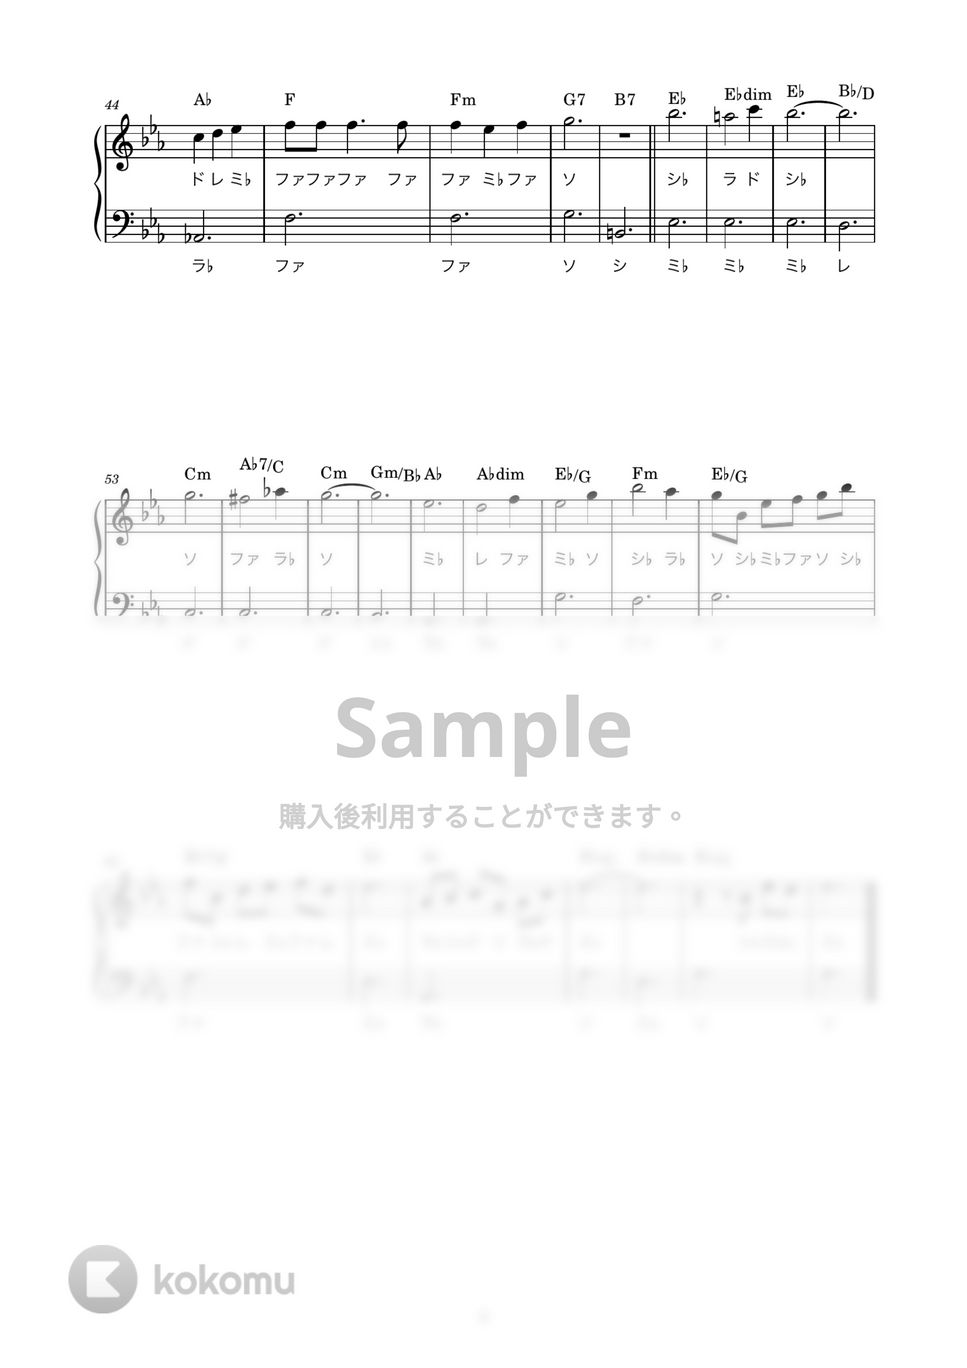 久石譲 - 晴れた日に・・・ (かんたん / 歌詞付き / ドレミ付き / 初心者) by piano.tokyo